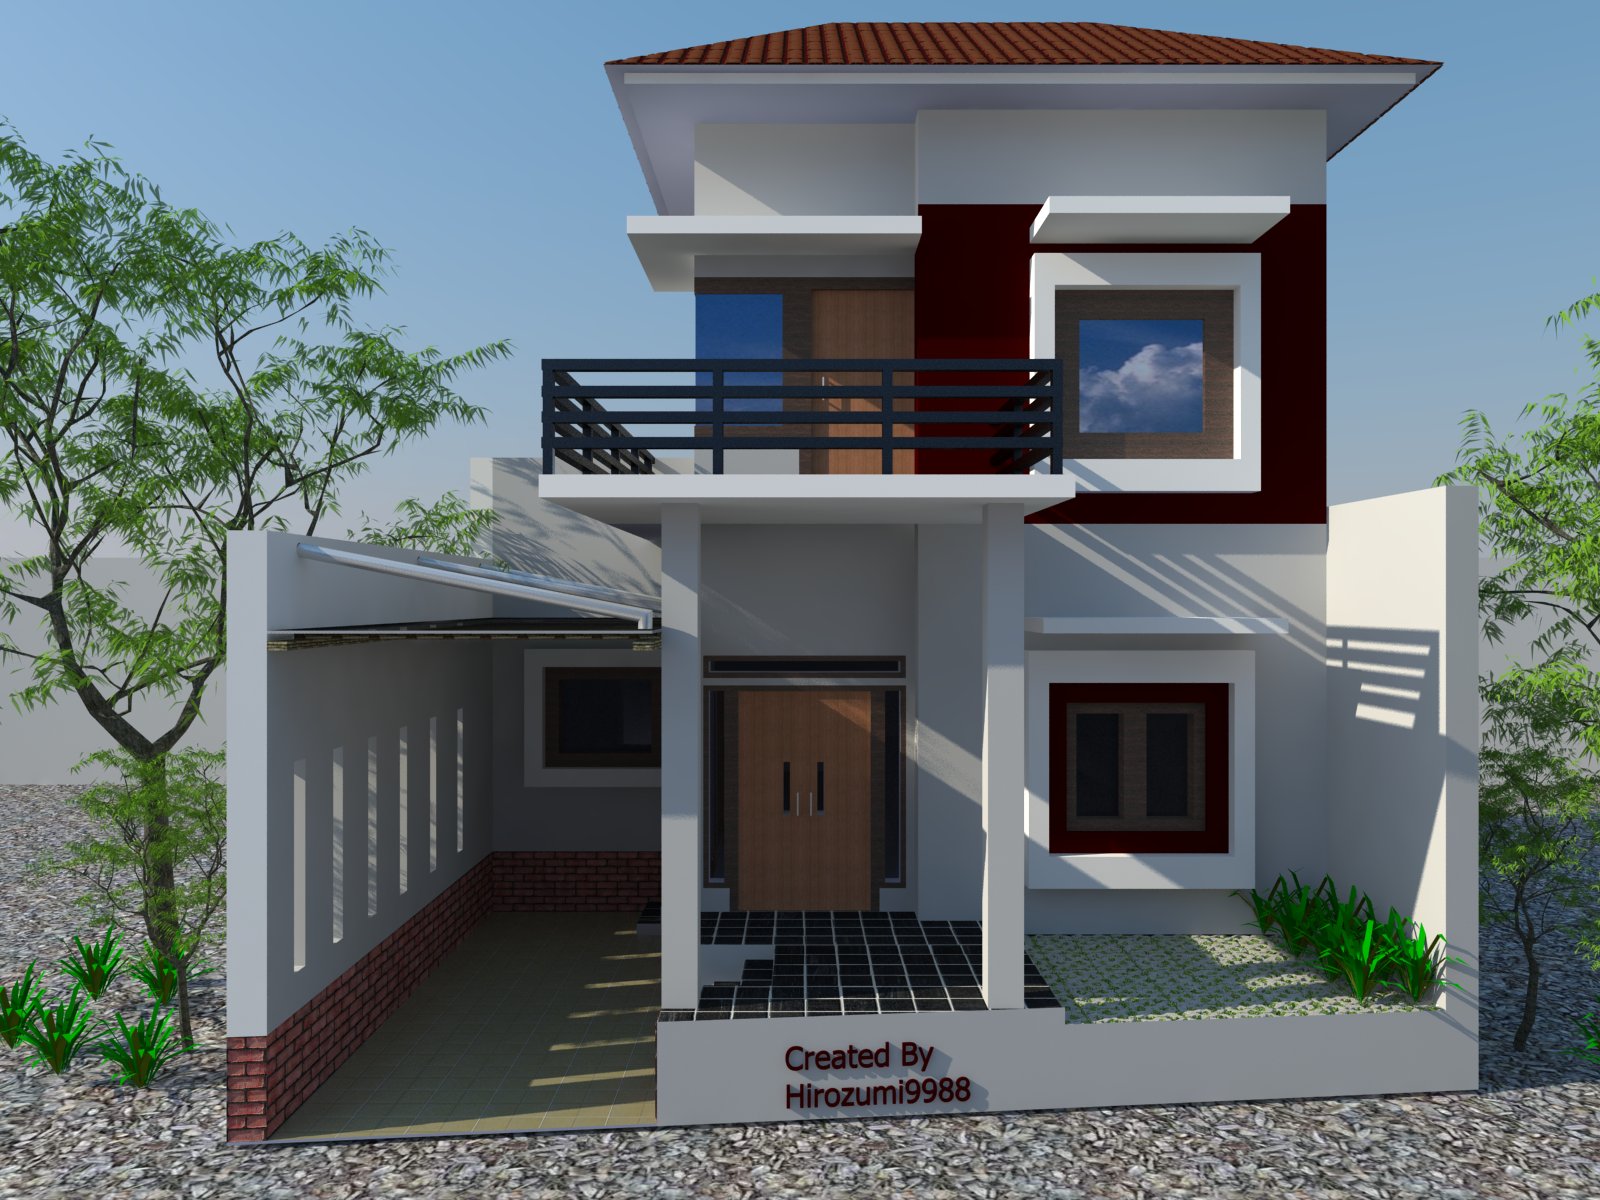 Desain Rumah Pa ParingBogor Jawa Barat Jasa Desain Rumah Di